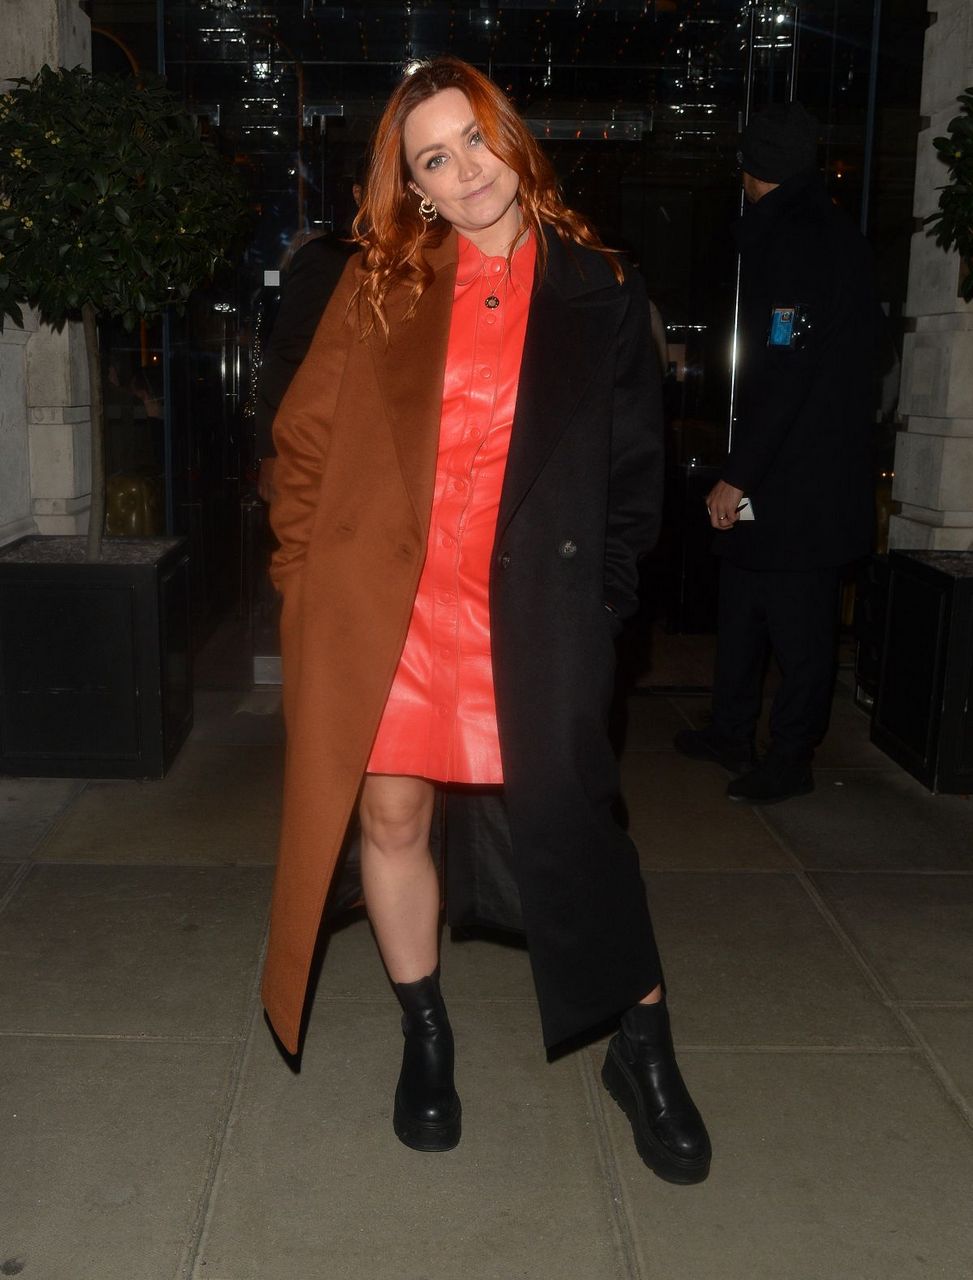 Arielle Free Arrives Charli Xcx S Crash Album Launch Party London